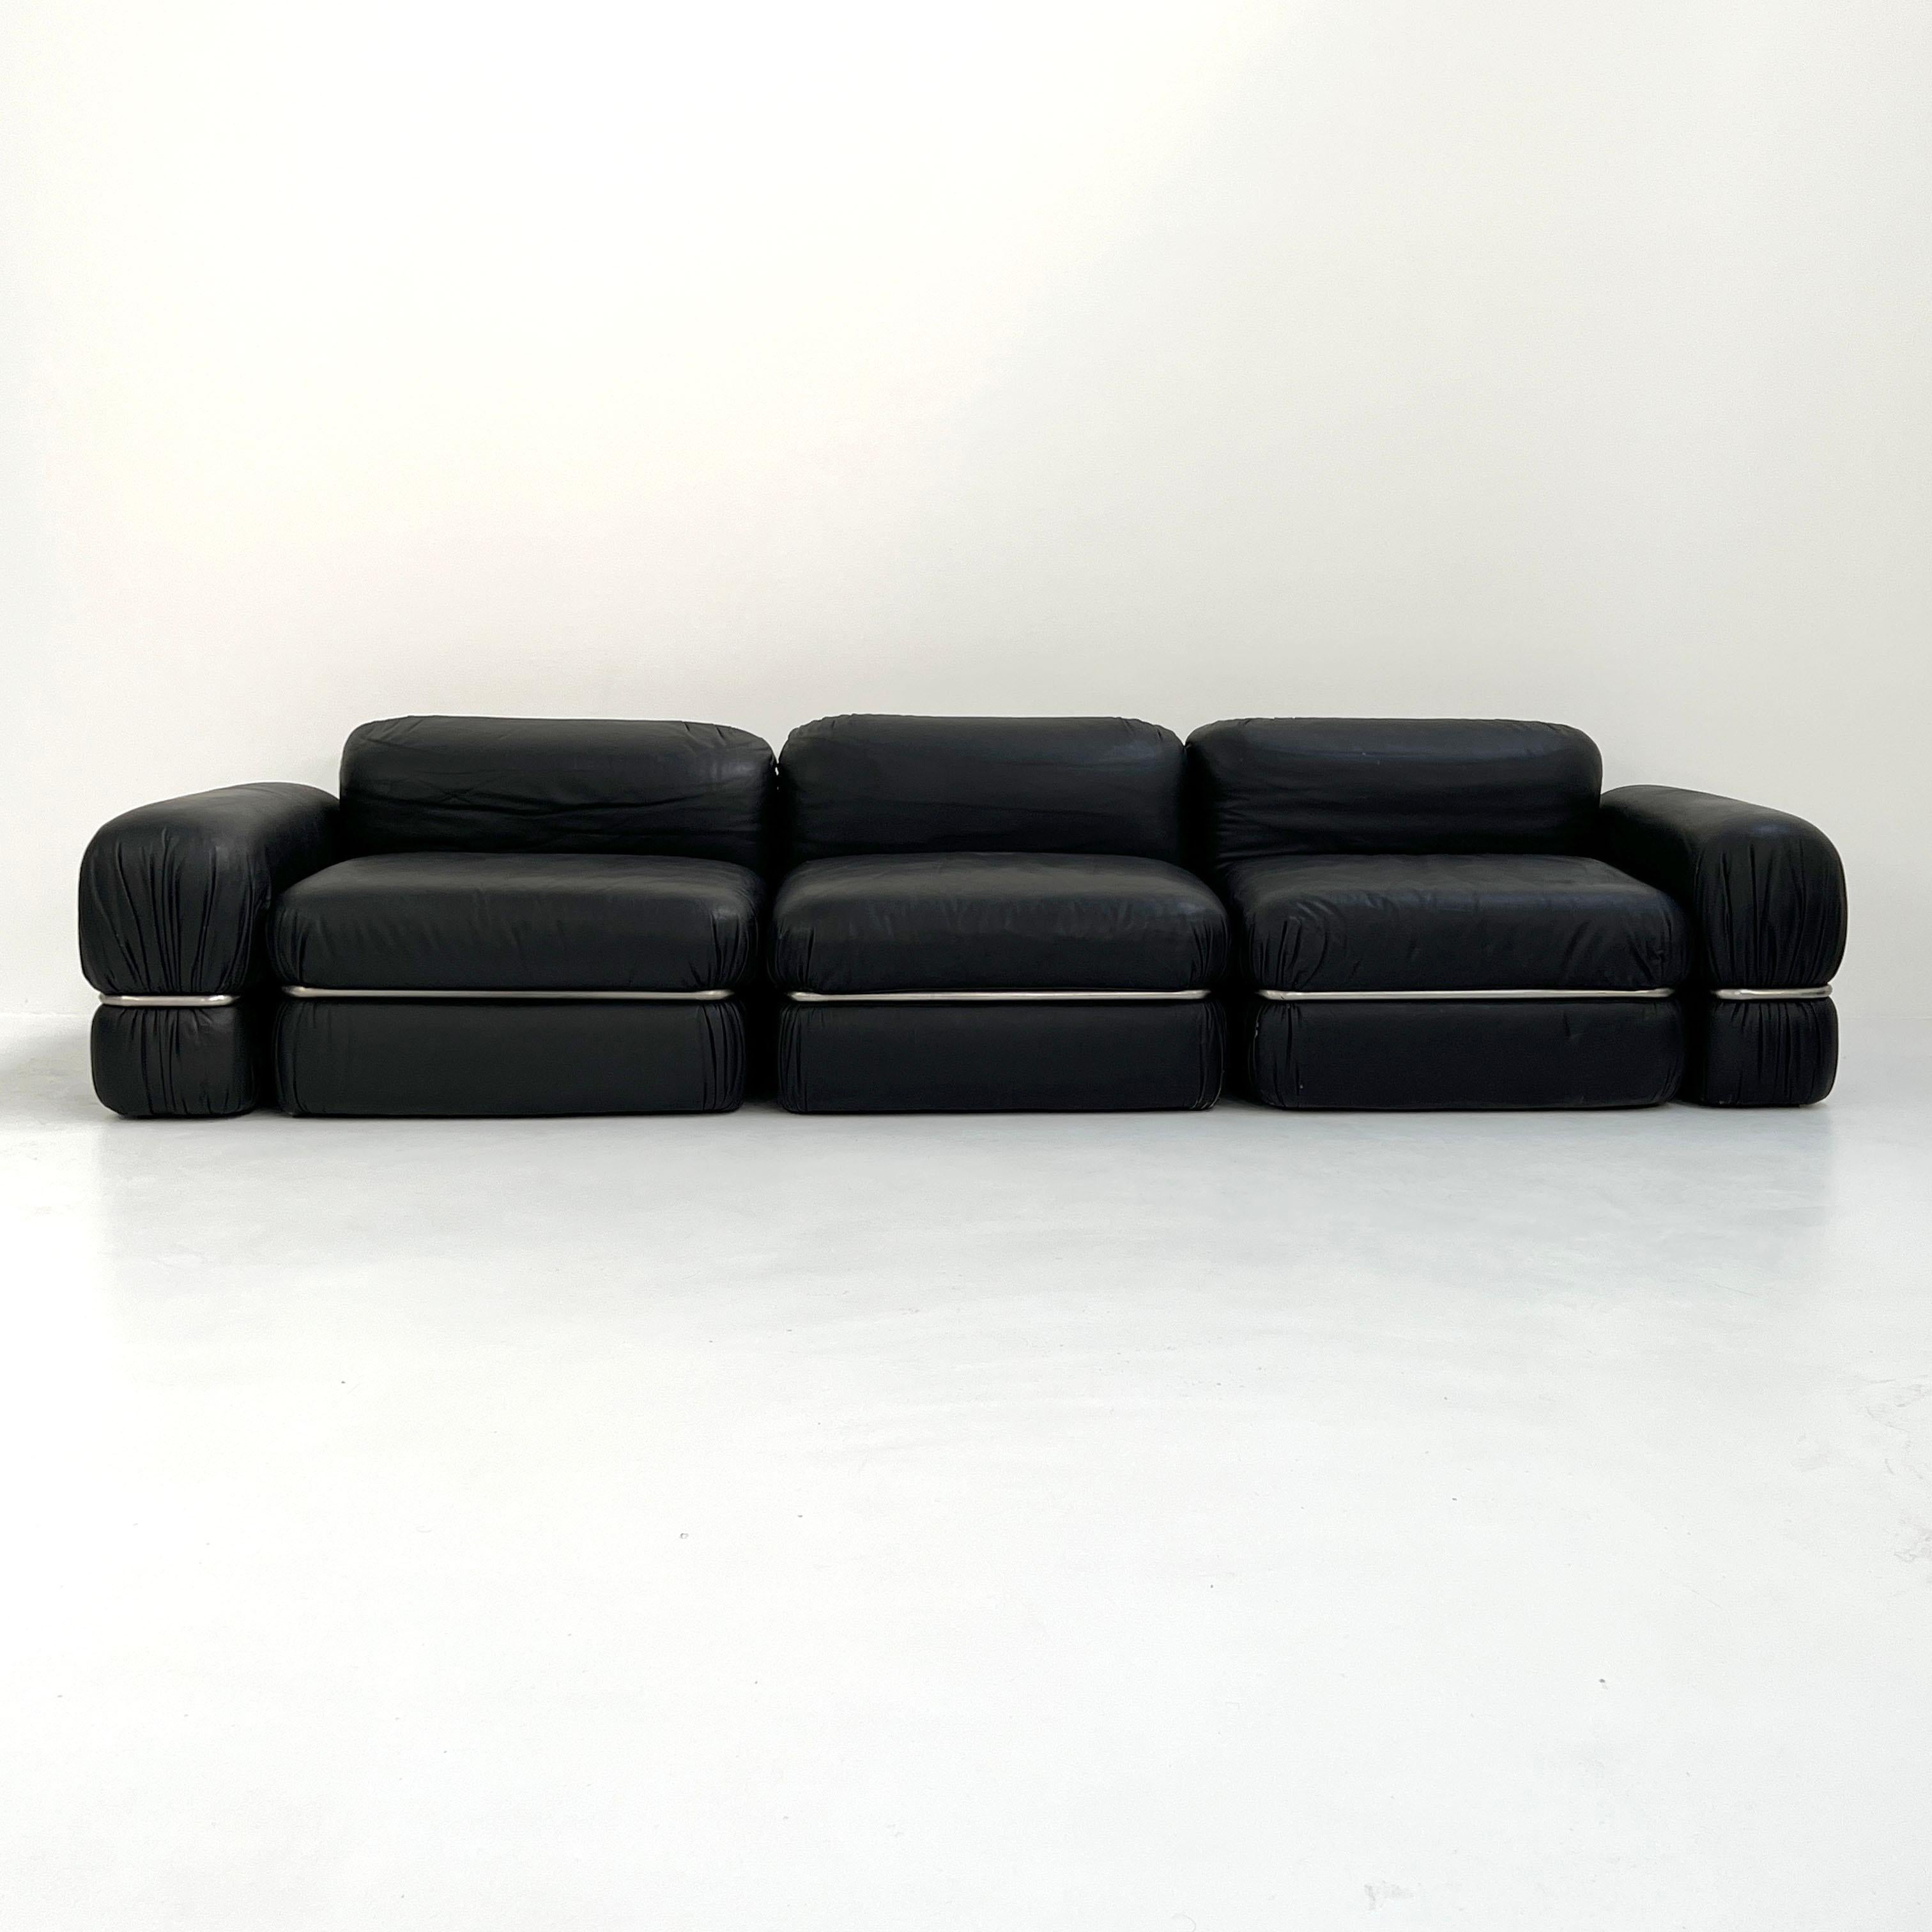 Mid-20th Century Black Leather Modular Sofa by Rodolfo Bonetto for Tecnosalotto, 1960s